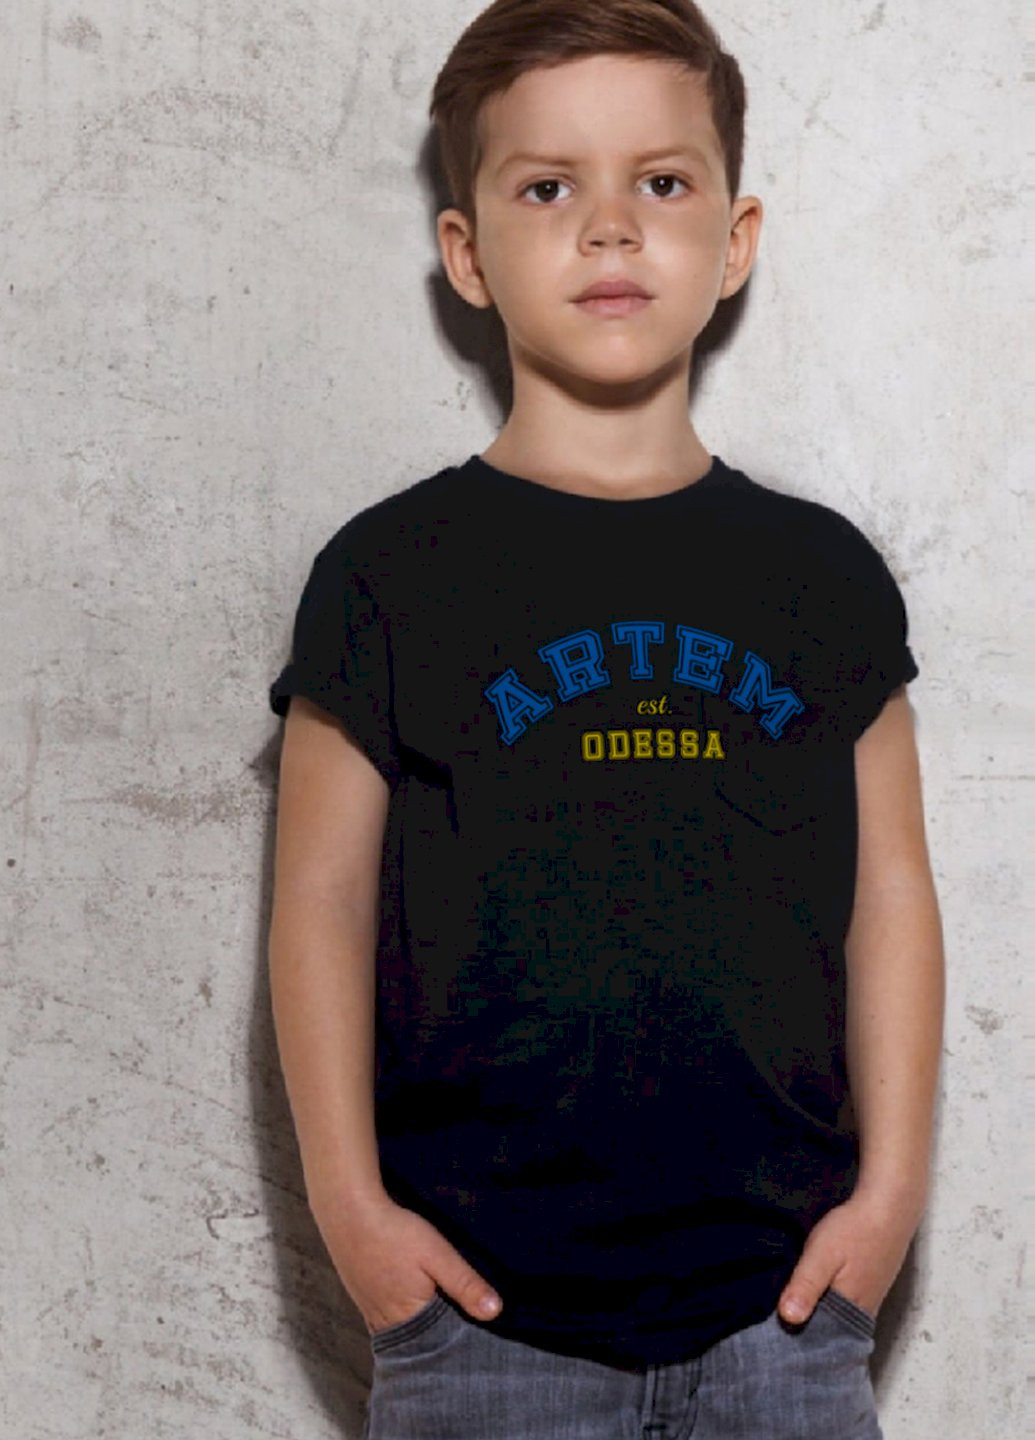 Черная демисезонная футболка детская патриотическая черная "артем est.odessa" Young&Free